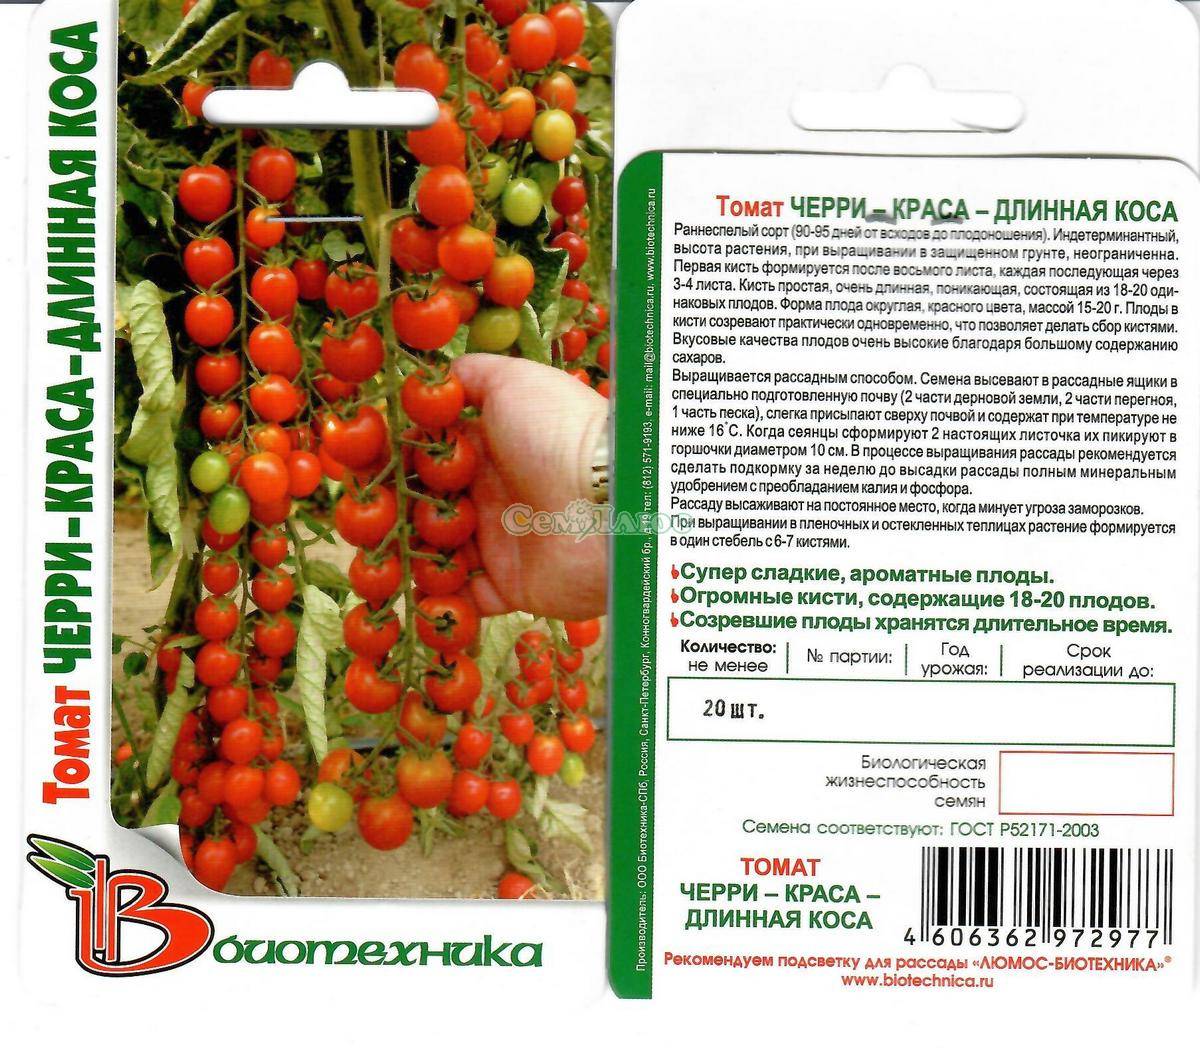 Описание сорта помидоров Рапунцель, их характеристика и урожайность